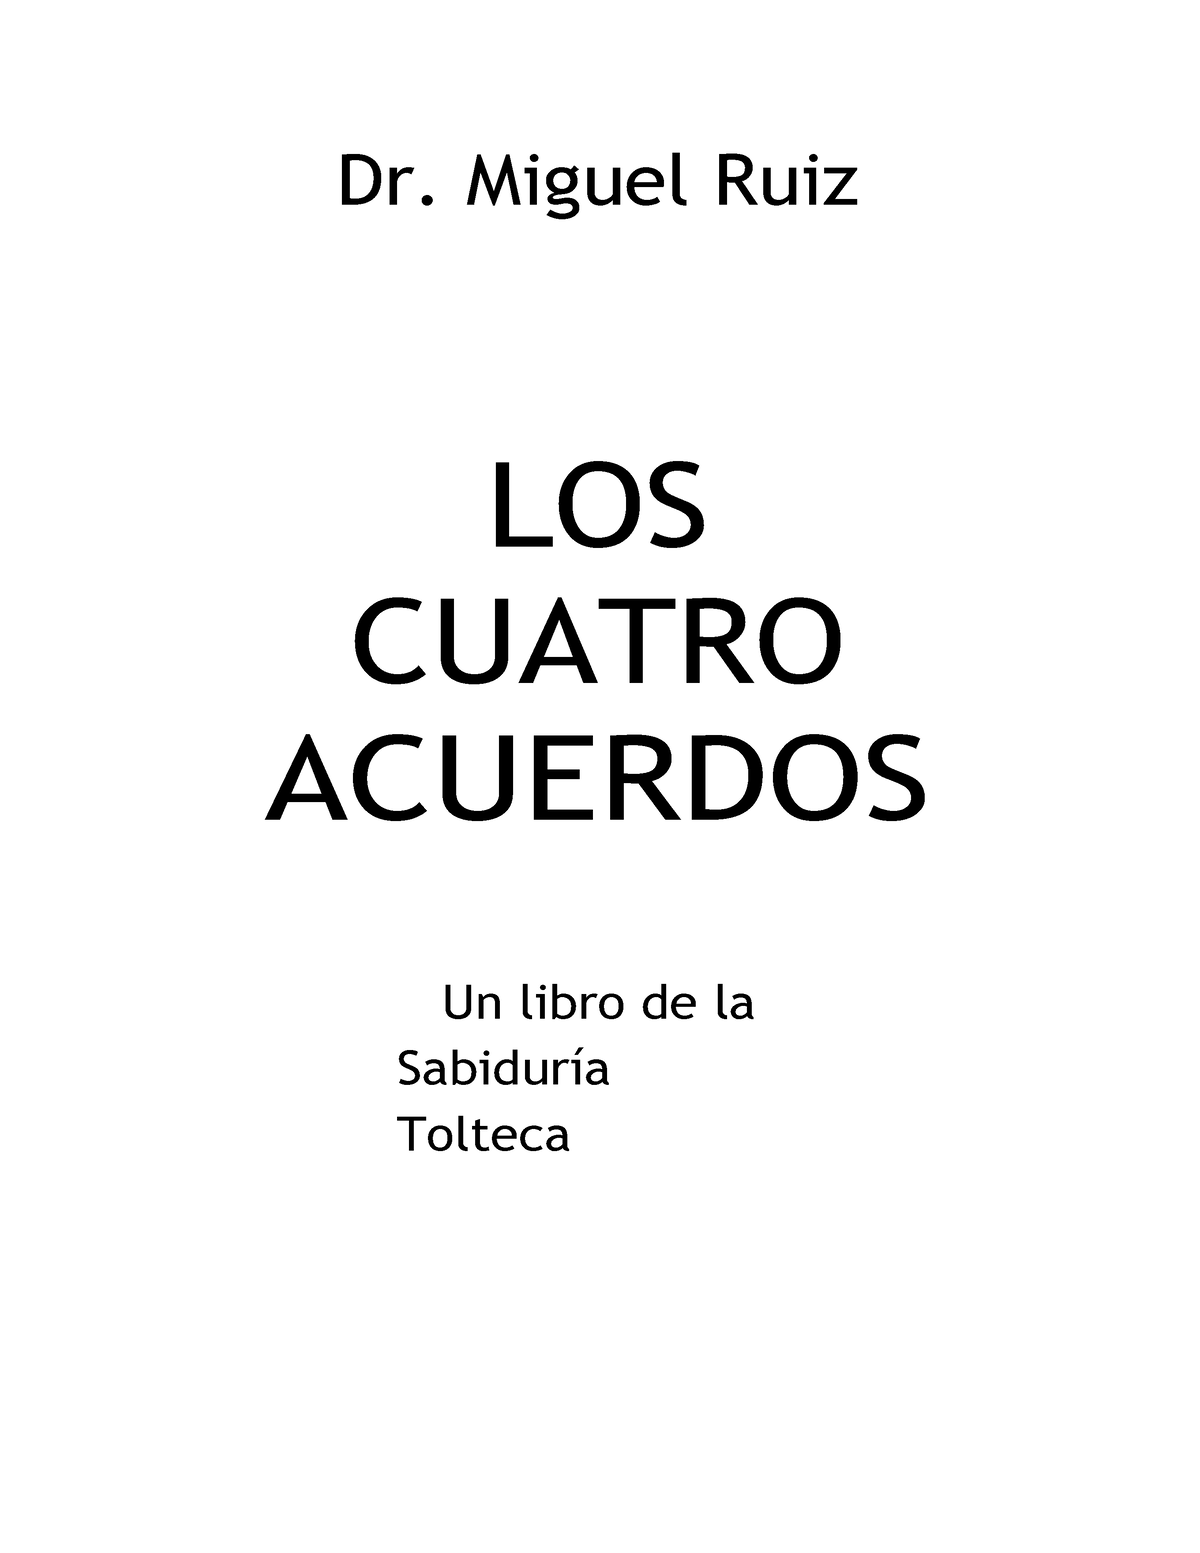 MariJó Bendito on X: Del libro Los 4 acuerdos de Miguel Ruiz, ¿cuál fue  el primer acuerdo que empezaste a trabajar? Yo: dejar de tomarme todo  personal. Sentí un gran alivio. Atenta